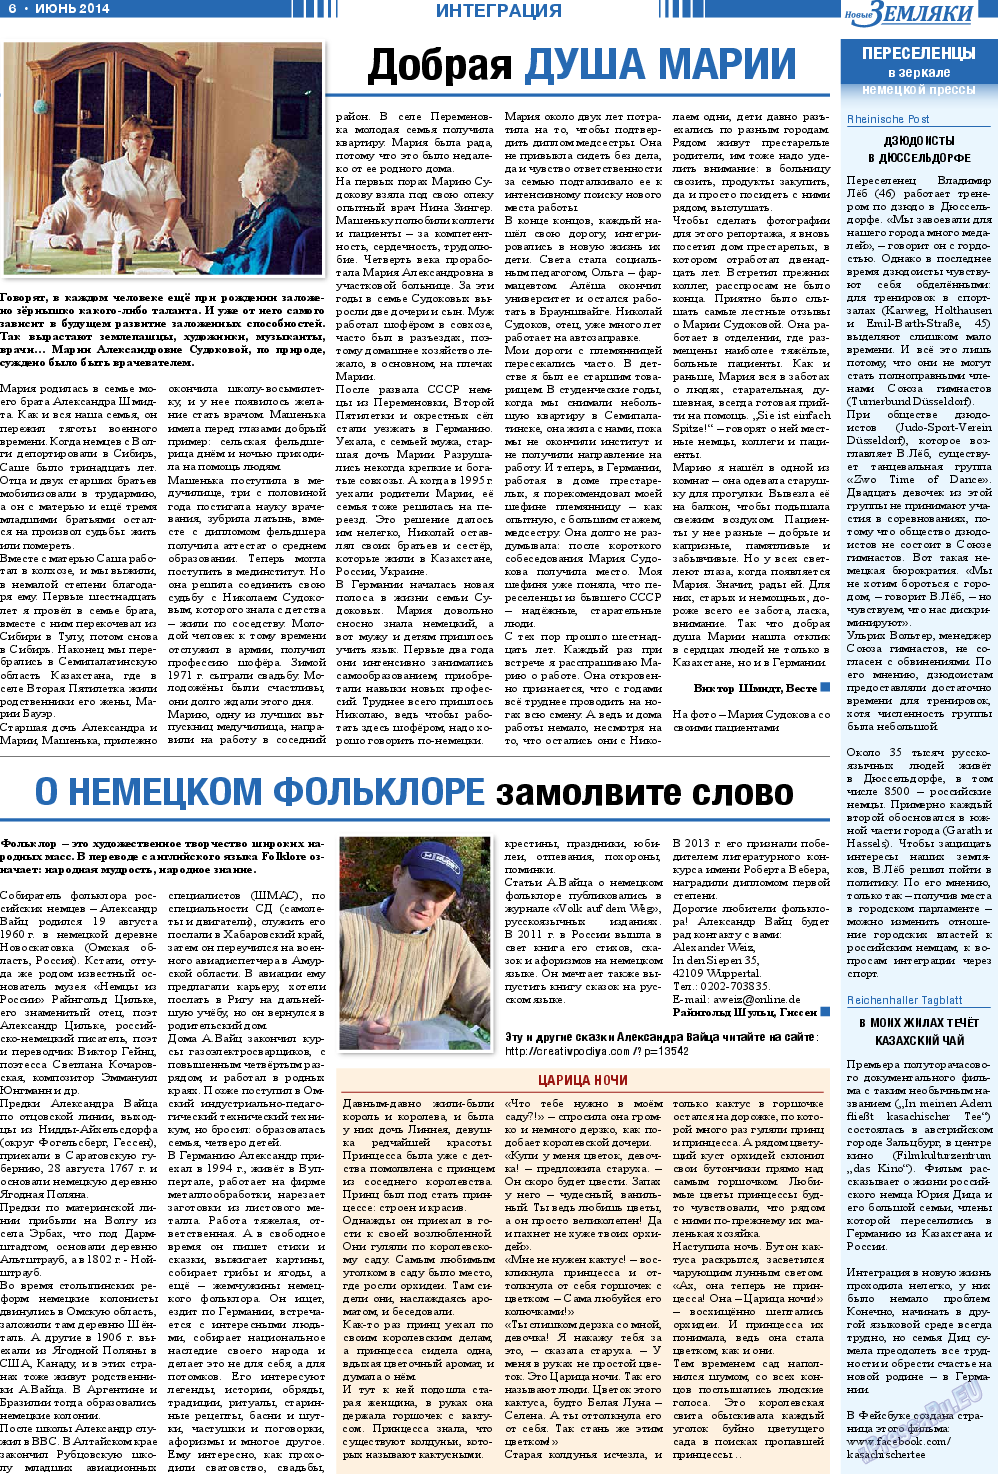 Новые Земляки, газета. 2014 №6 стр.6